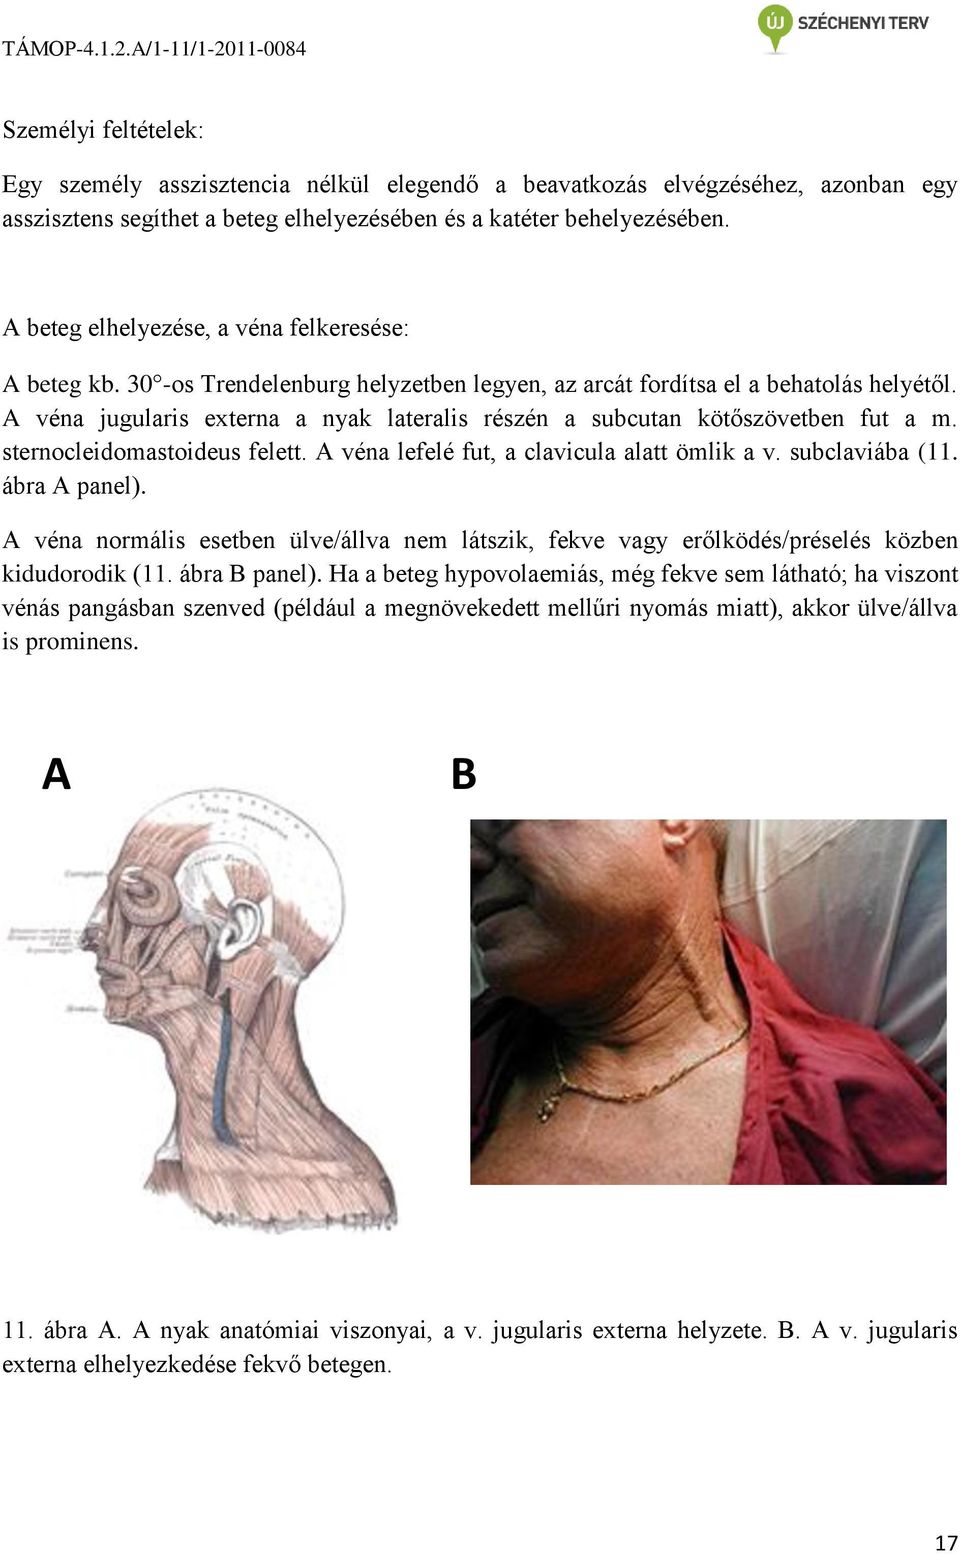 A véna jugularis externa a nyak lateralis részén a subcutan kötőszövetben fut a m. sternocleidomastoideus felett. A véna lefelé fut, a clavicula alatt ömlik a v. subclaviába (11. ábra A panel).